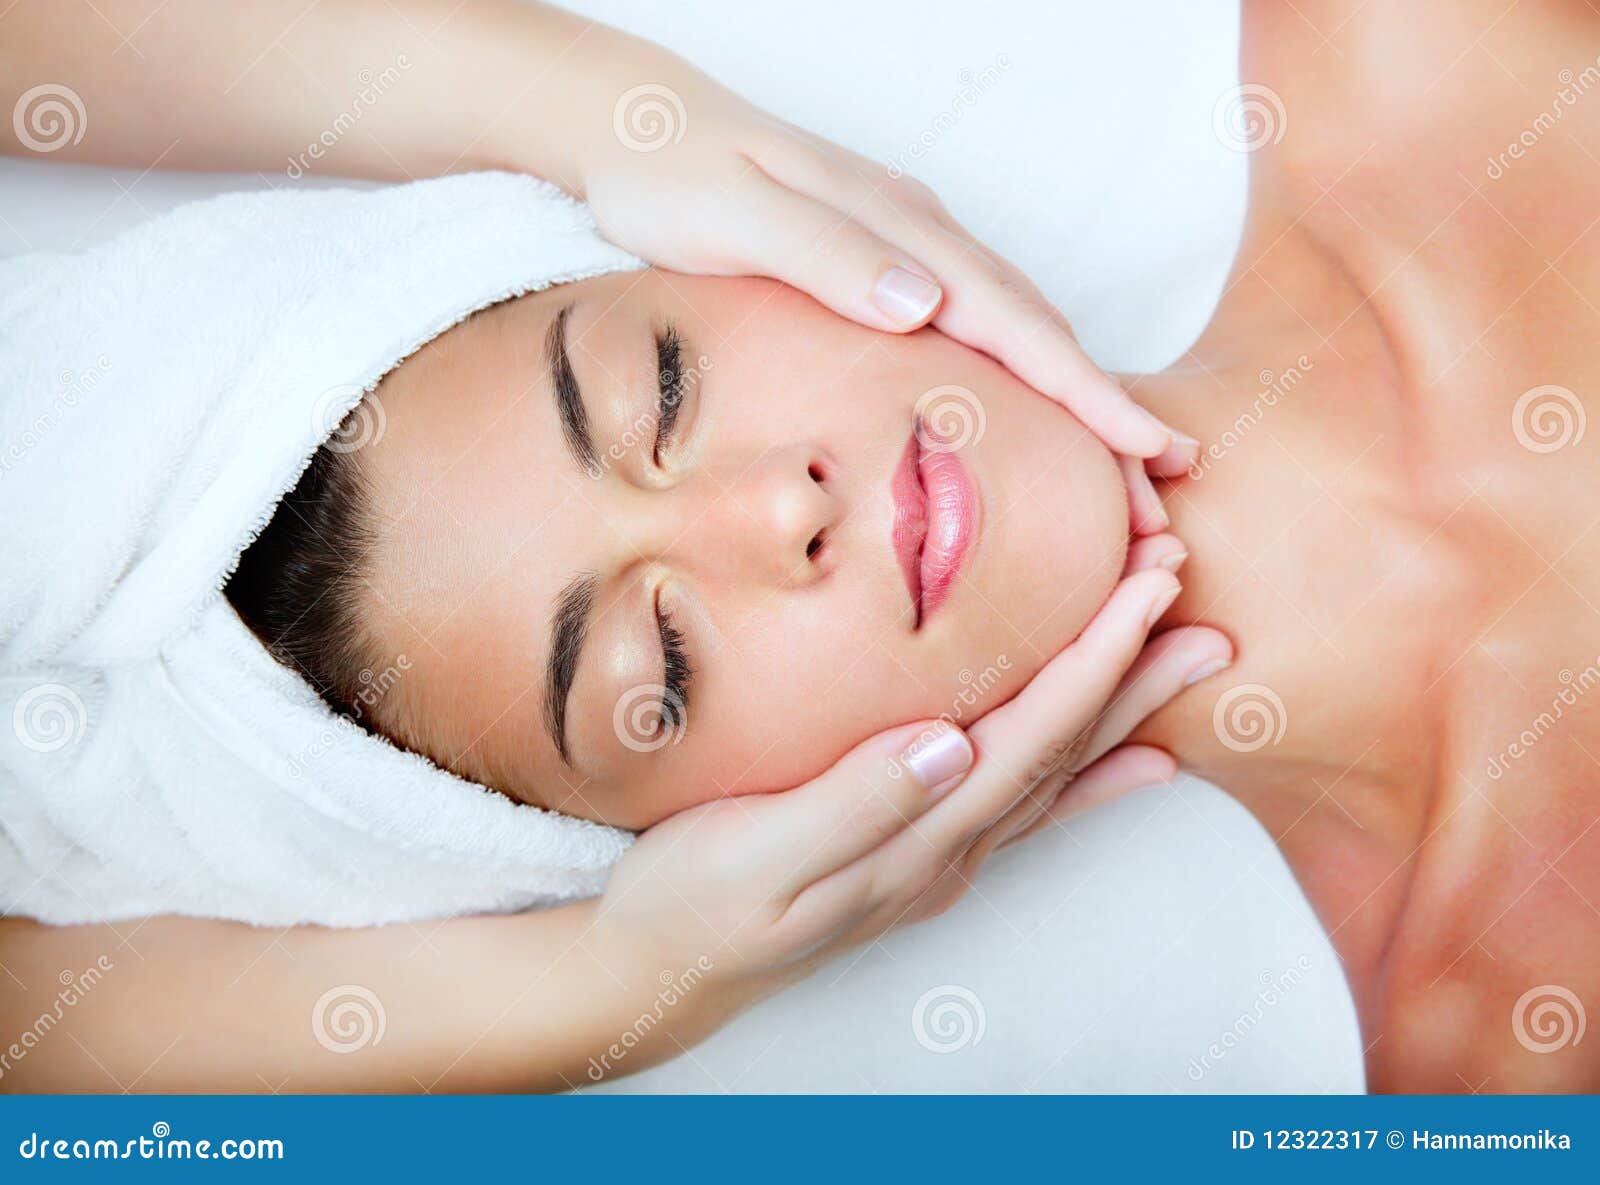 beautiful young woman receiving facial massage.